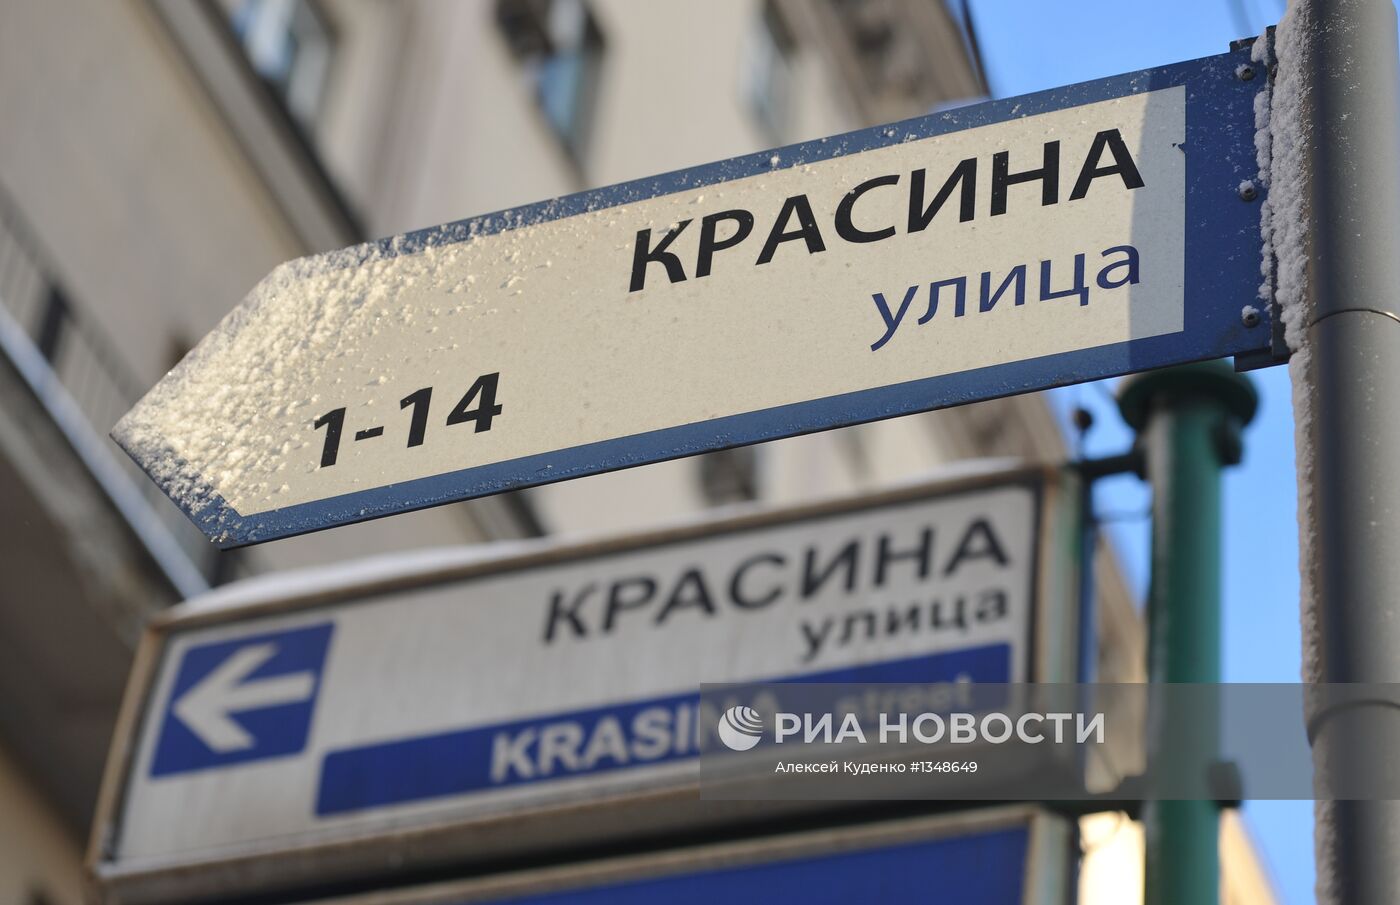 Новый дизайн указателей номеров домов и названий улиц в Москве